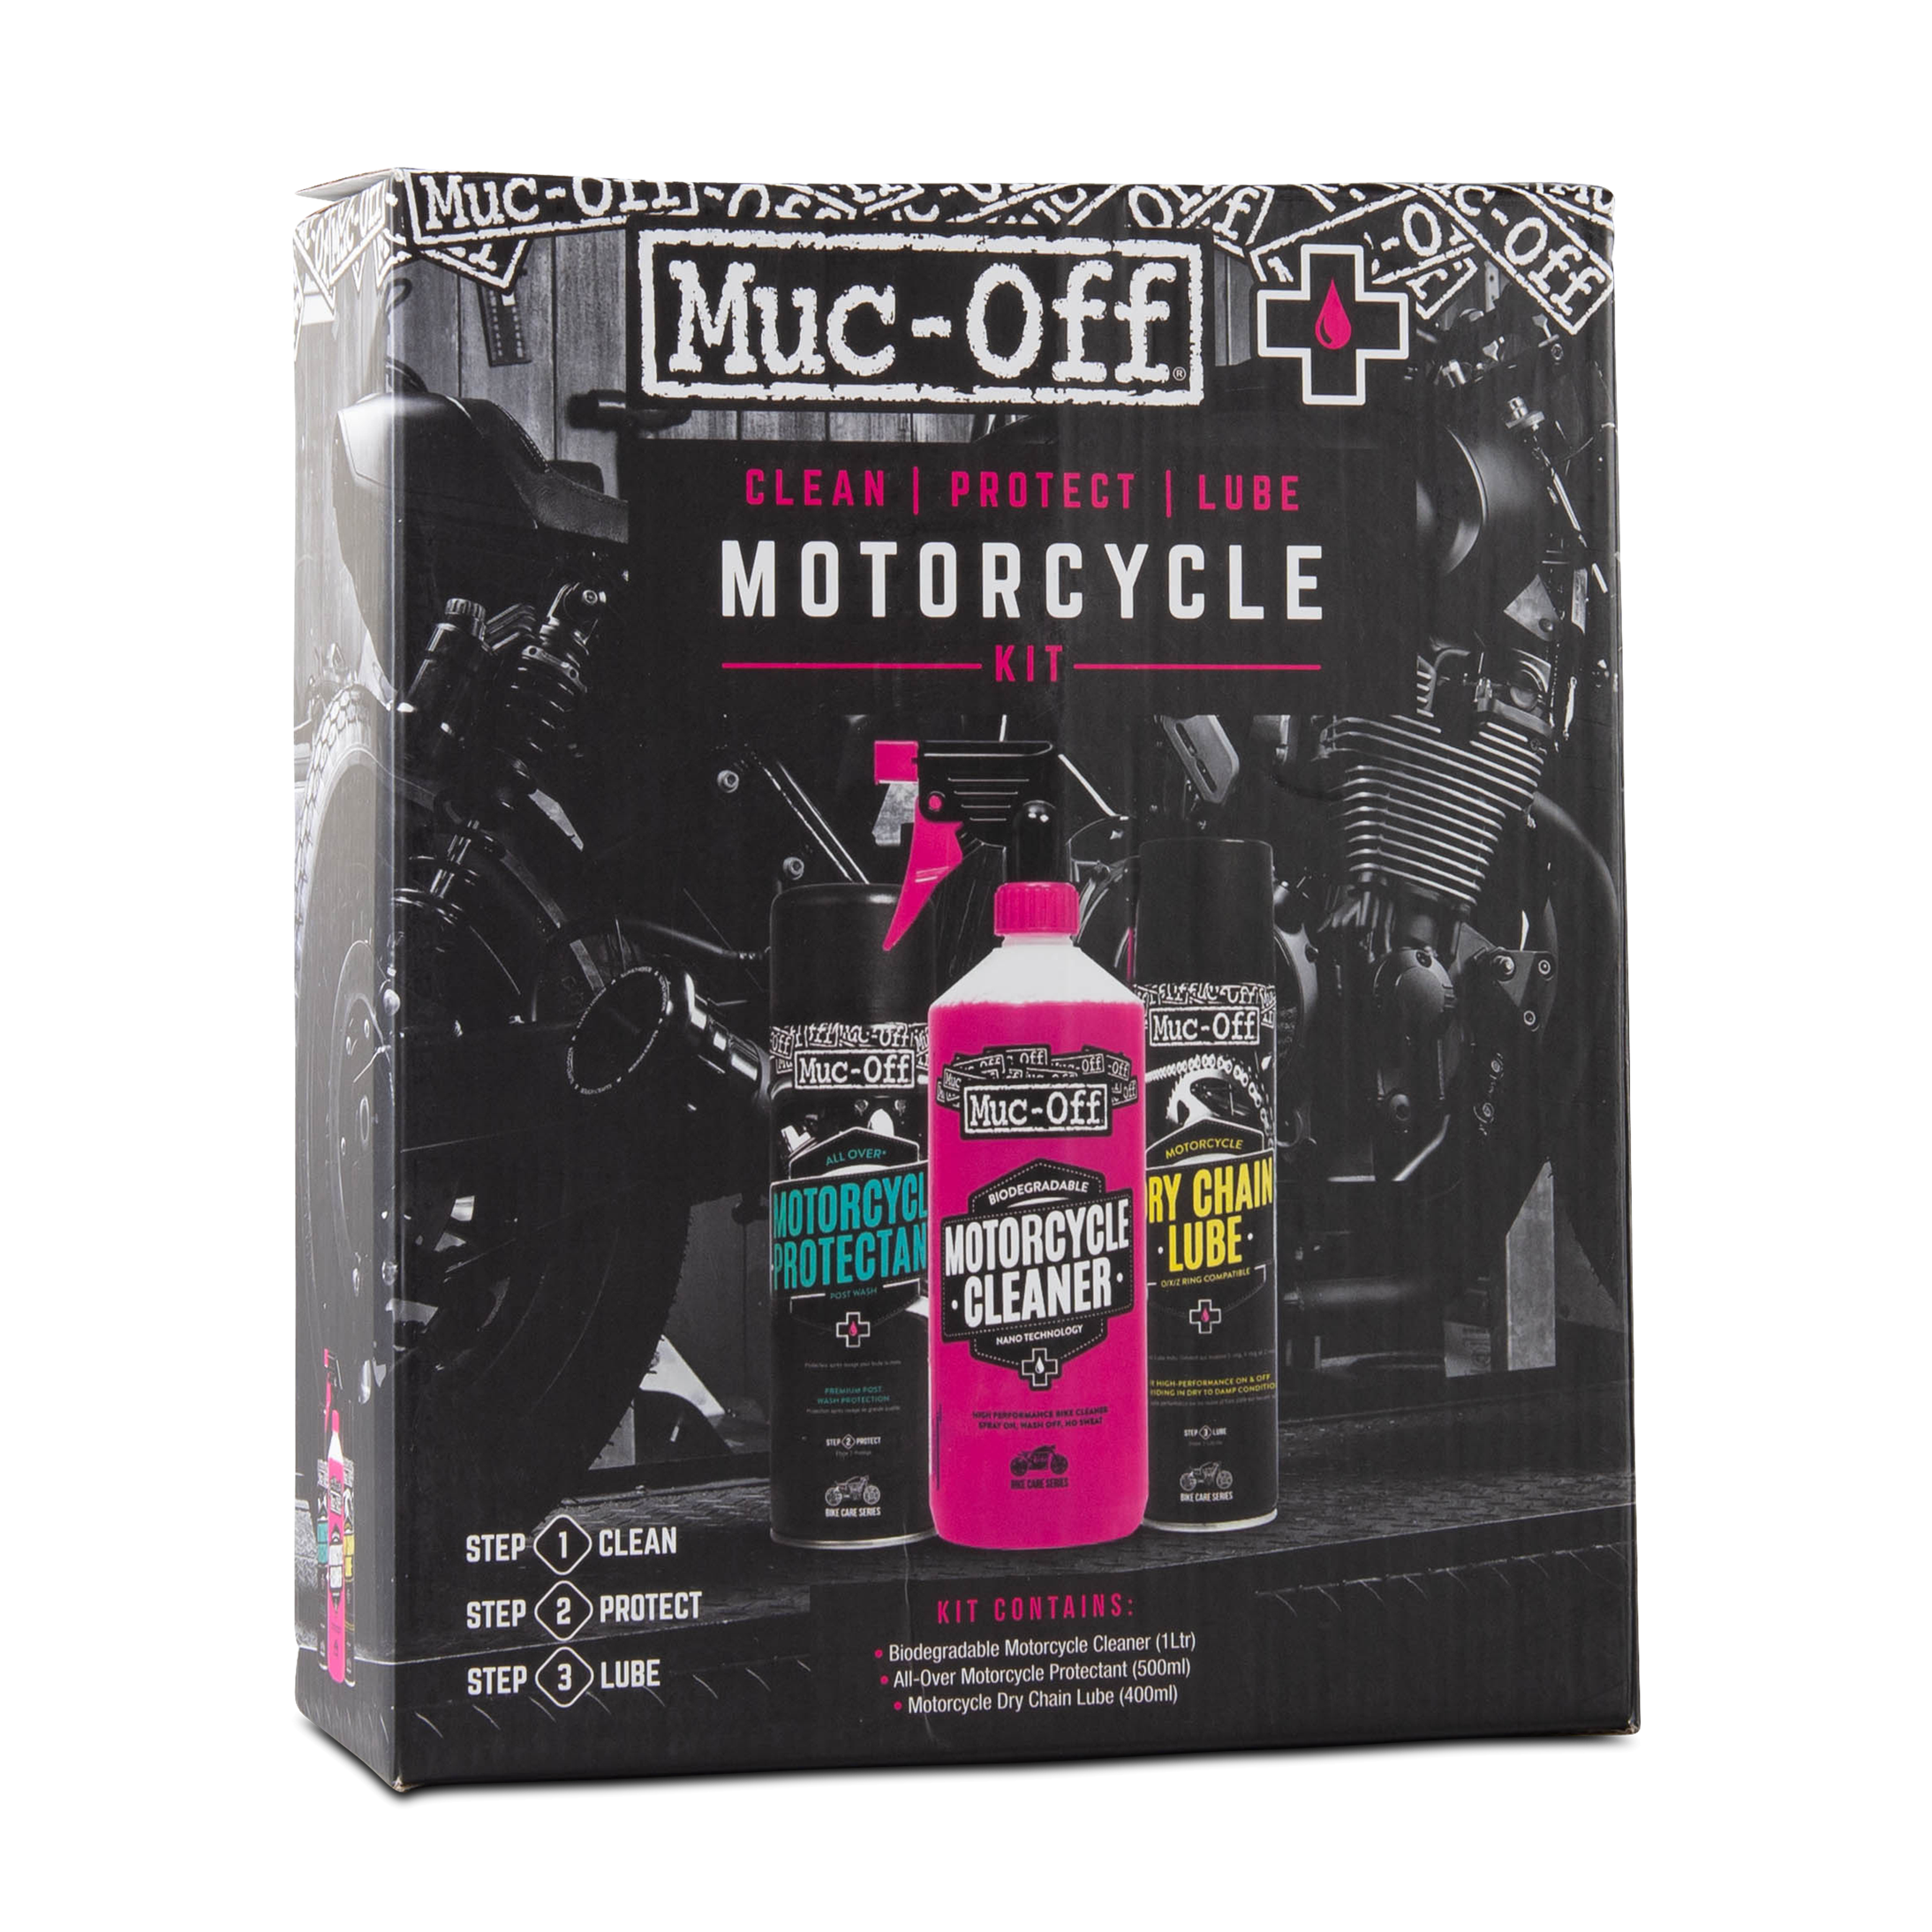 Nettoyant moto OC1 Motorcycle Cleaner - Pour un nettoyage